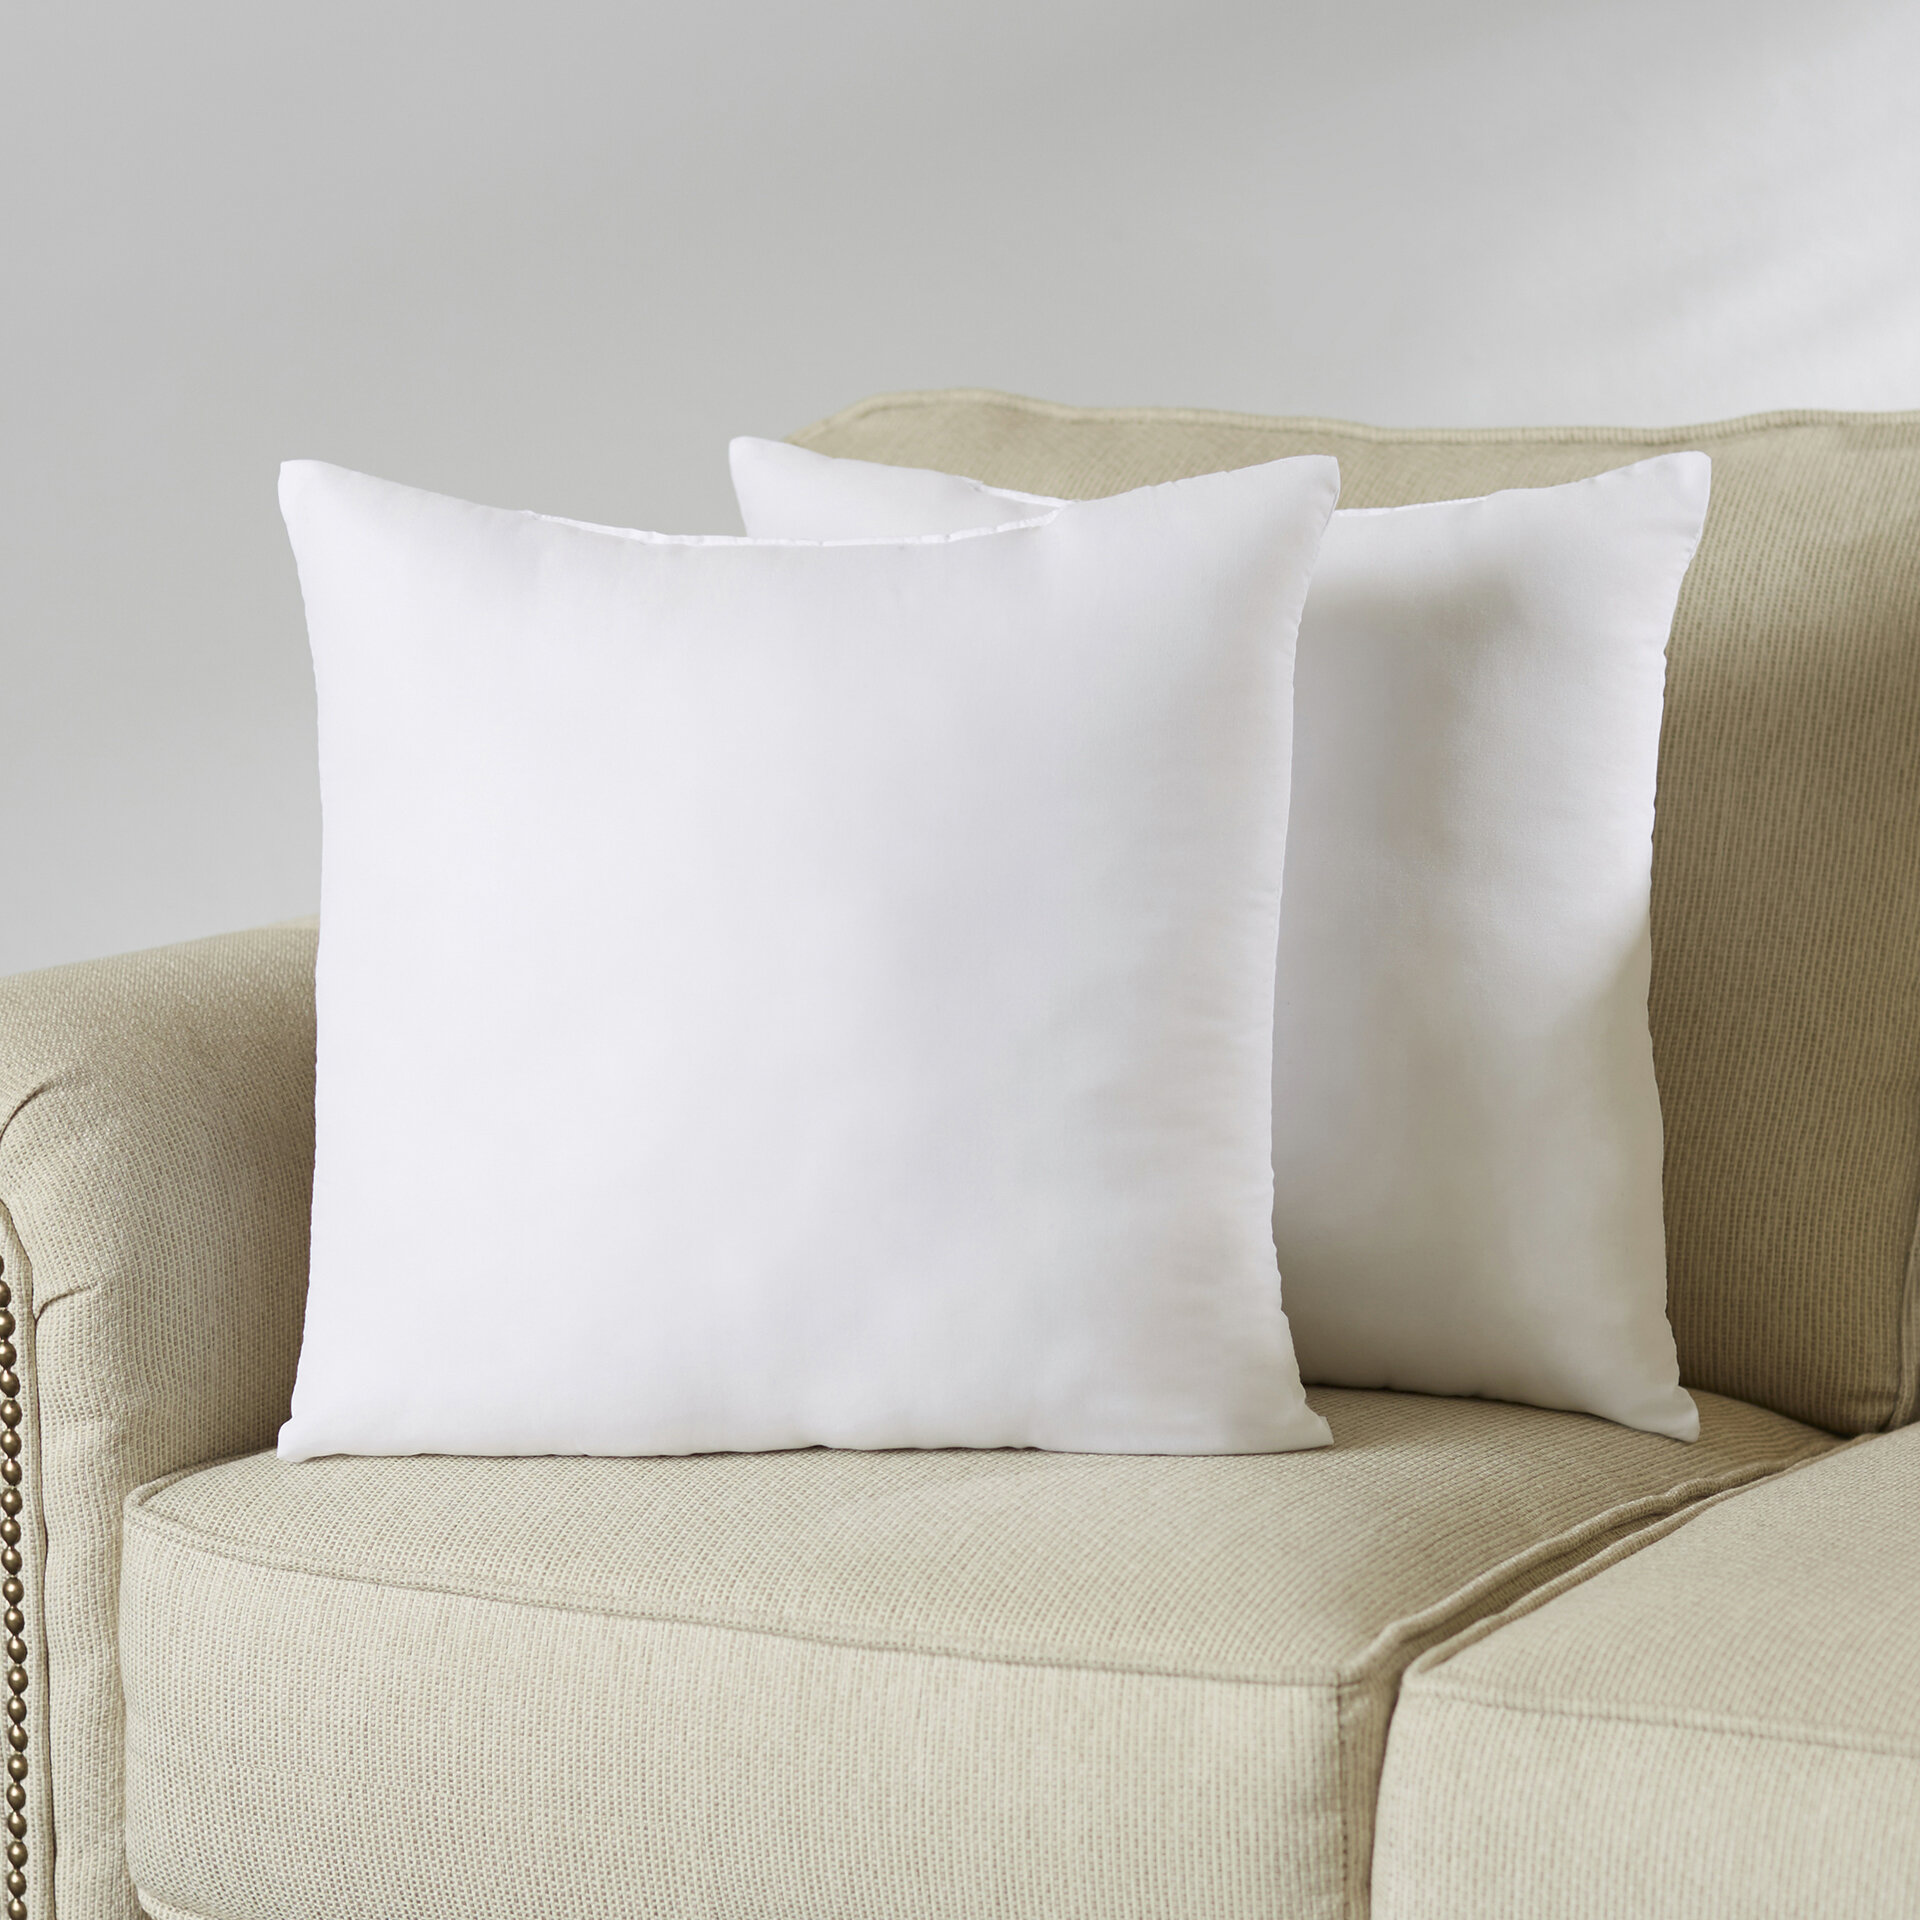 Wayfair Basics Pillow Insert \u0026 Reviews 